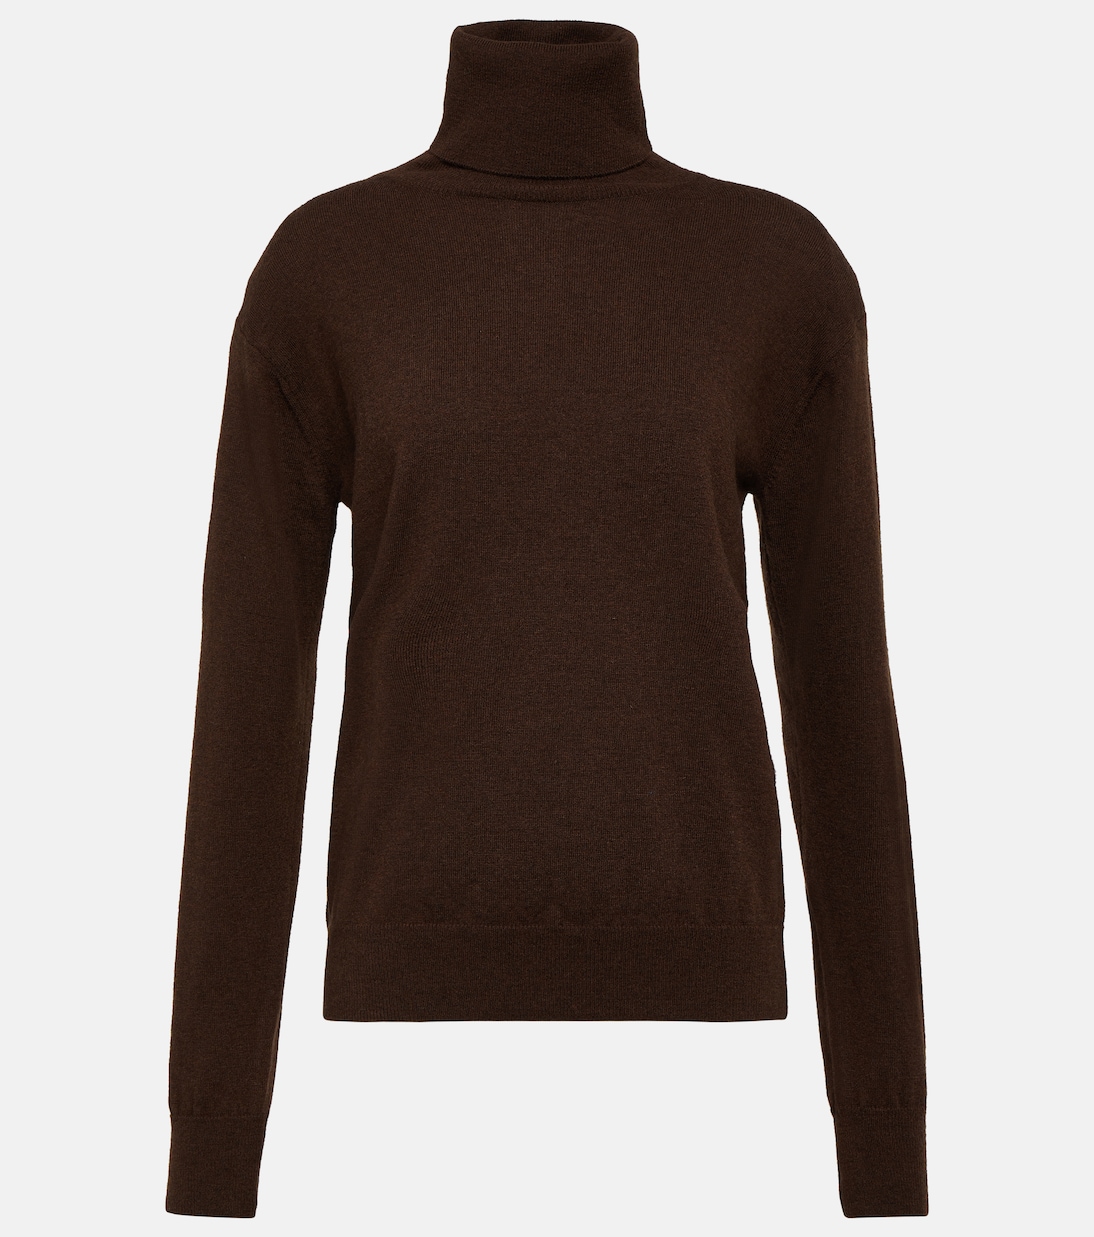 цена Шерстяной свитер ines с высоким воротником The Frankie Shop, коричневый